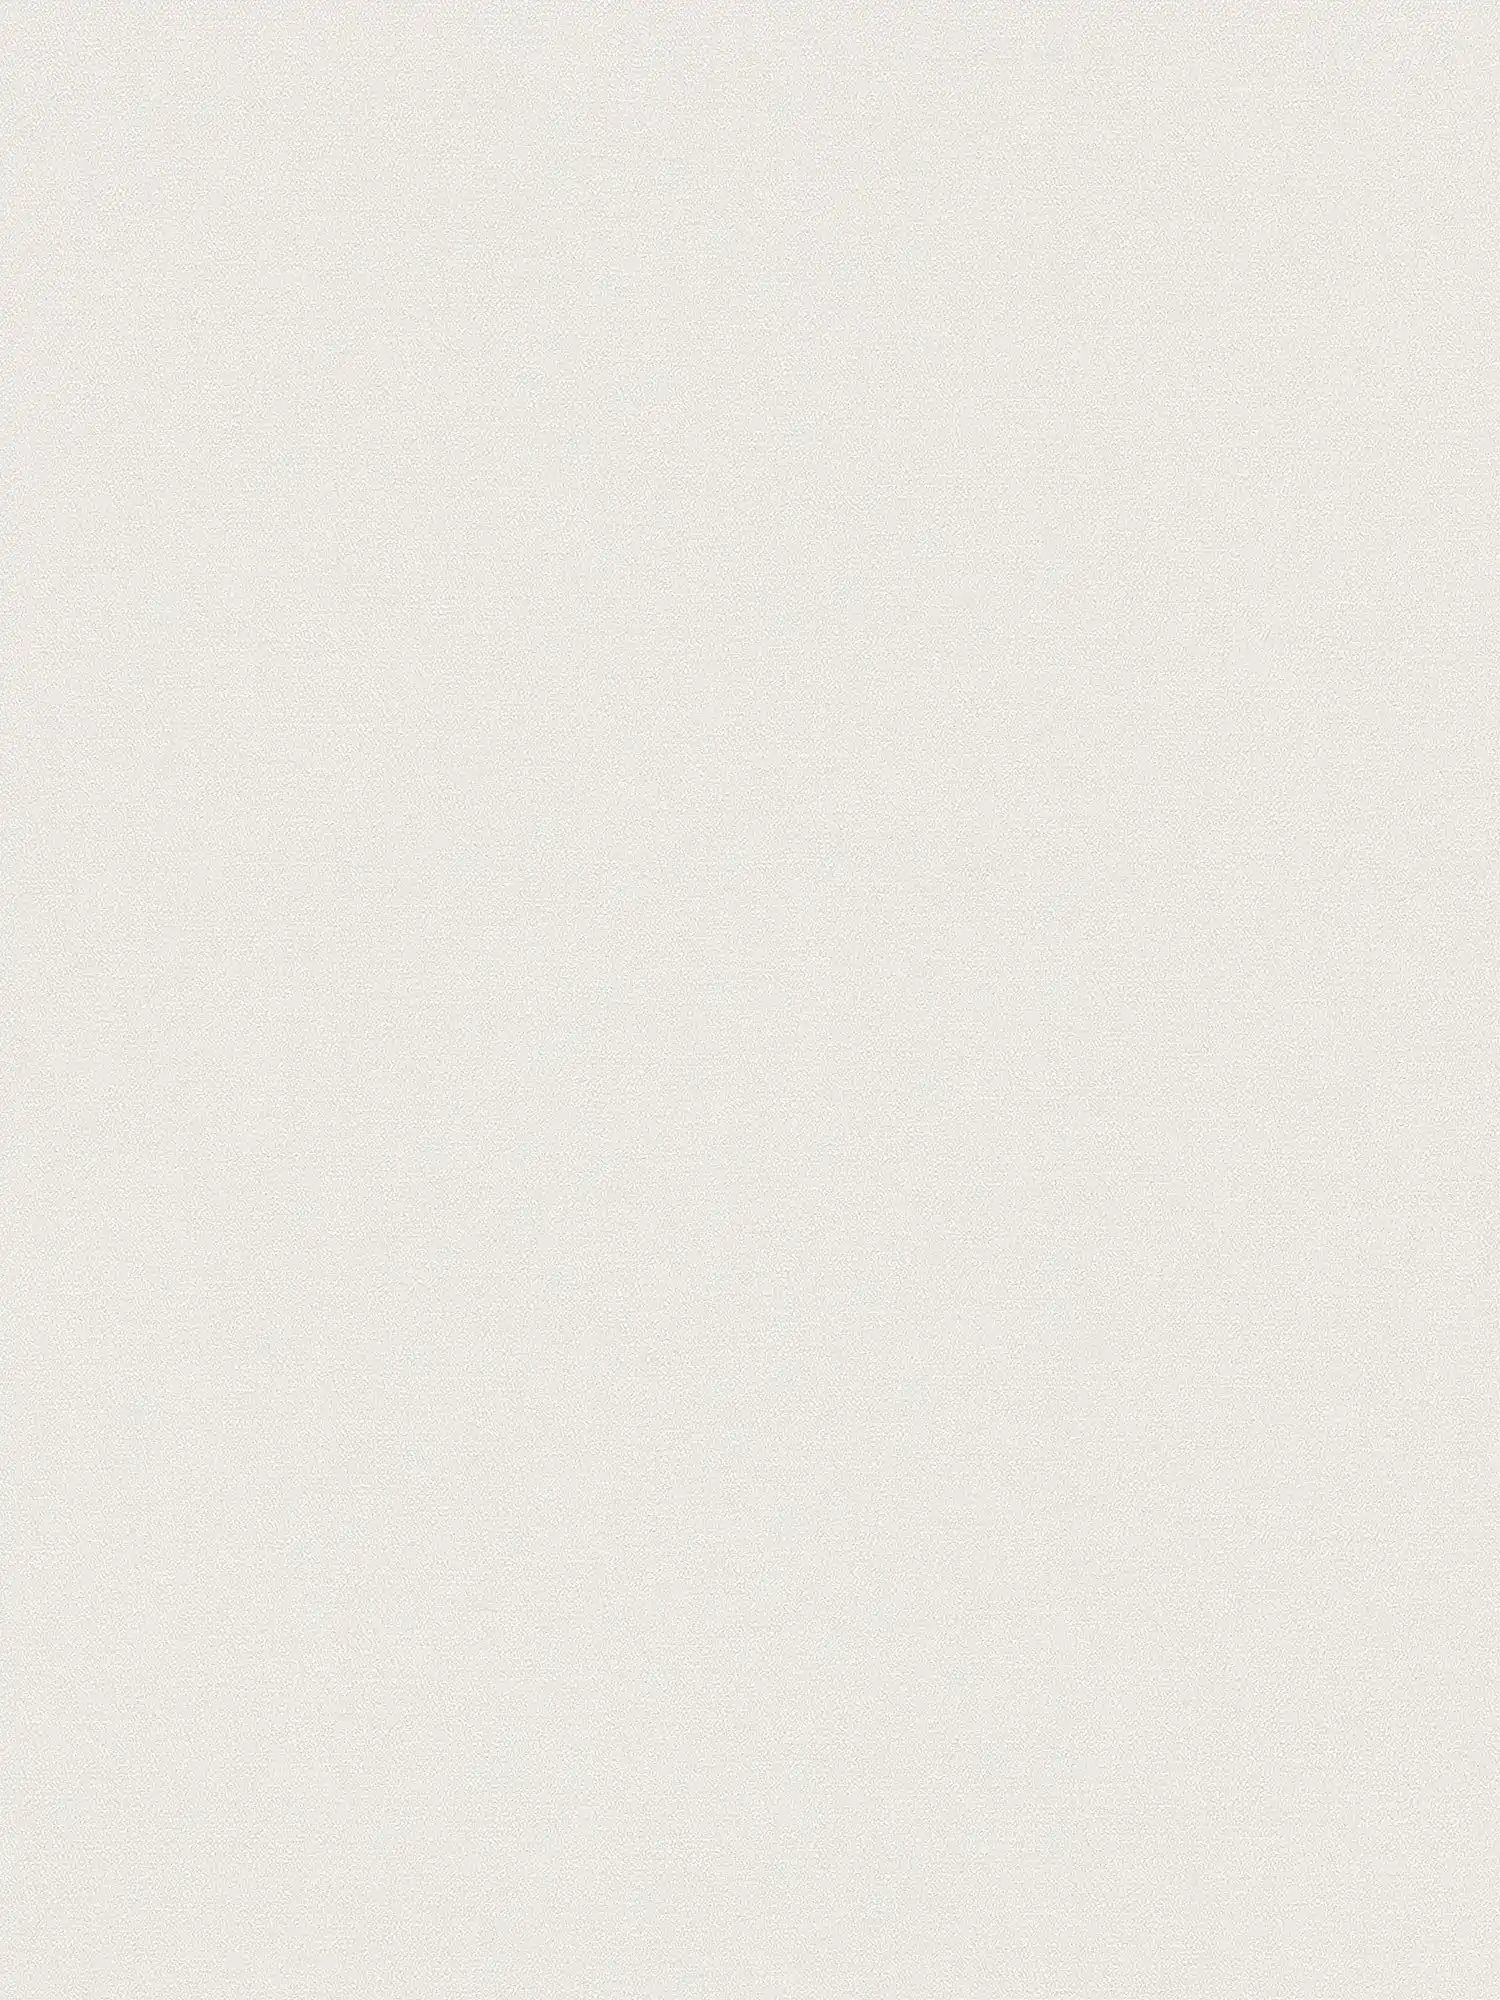 Non-woven wallpaper monochrome in light shades - white
